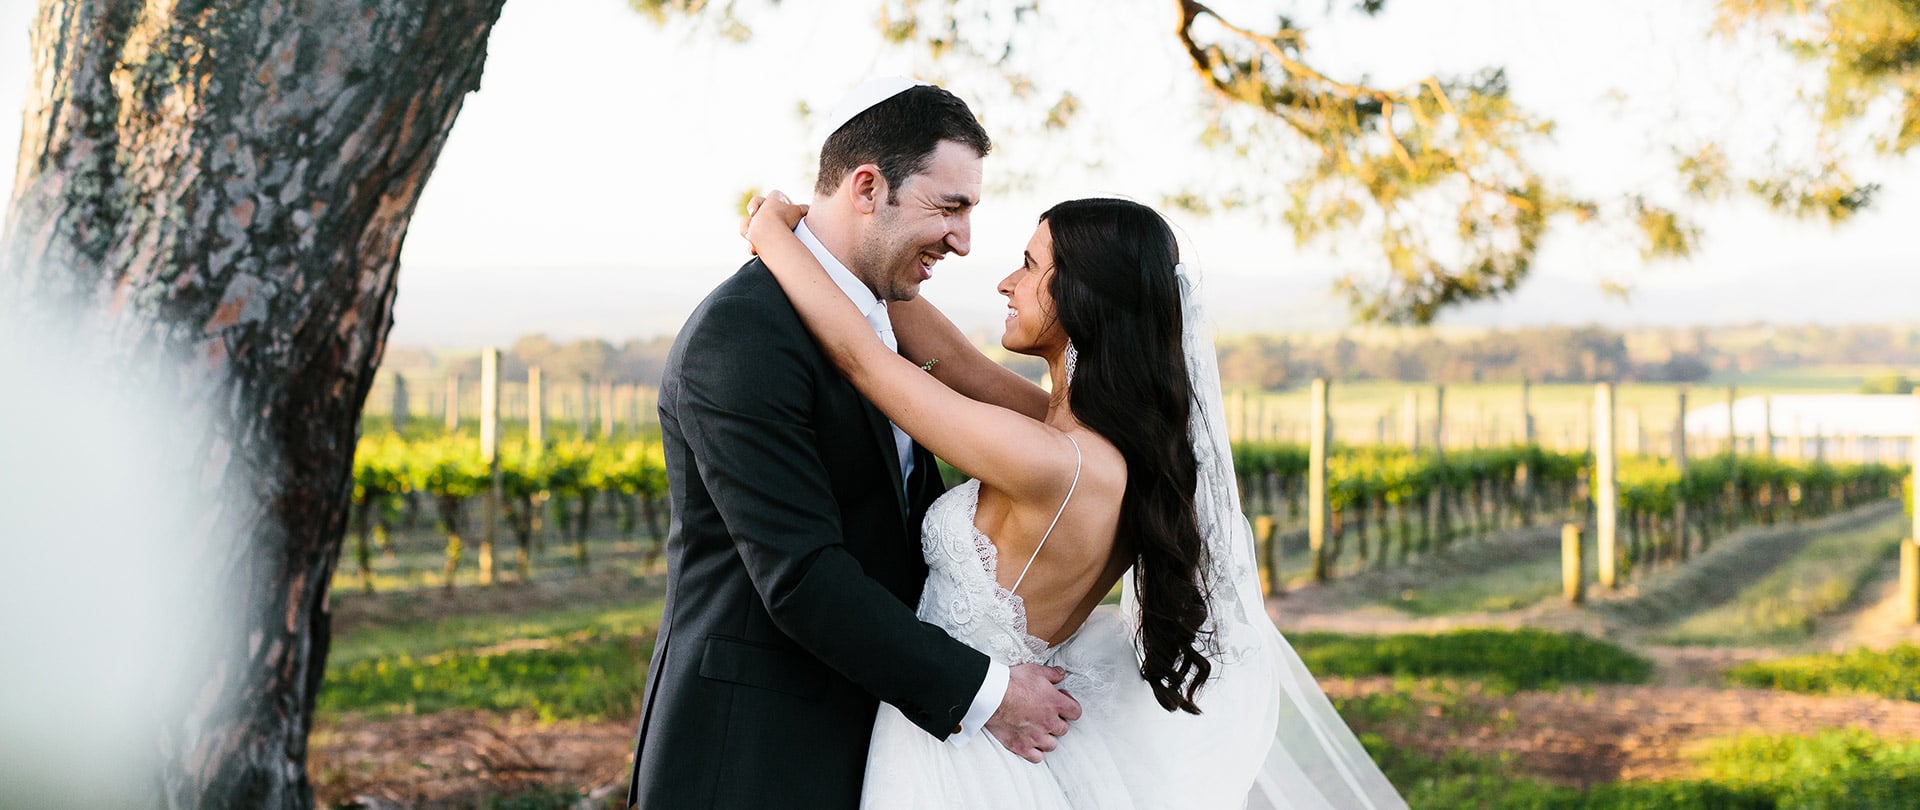 Alexa & Moshe Wedding Video Filmed at Yarra Valley, Victoria